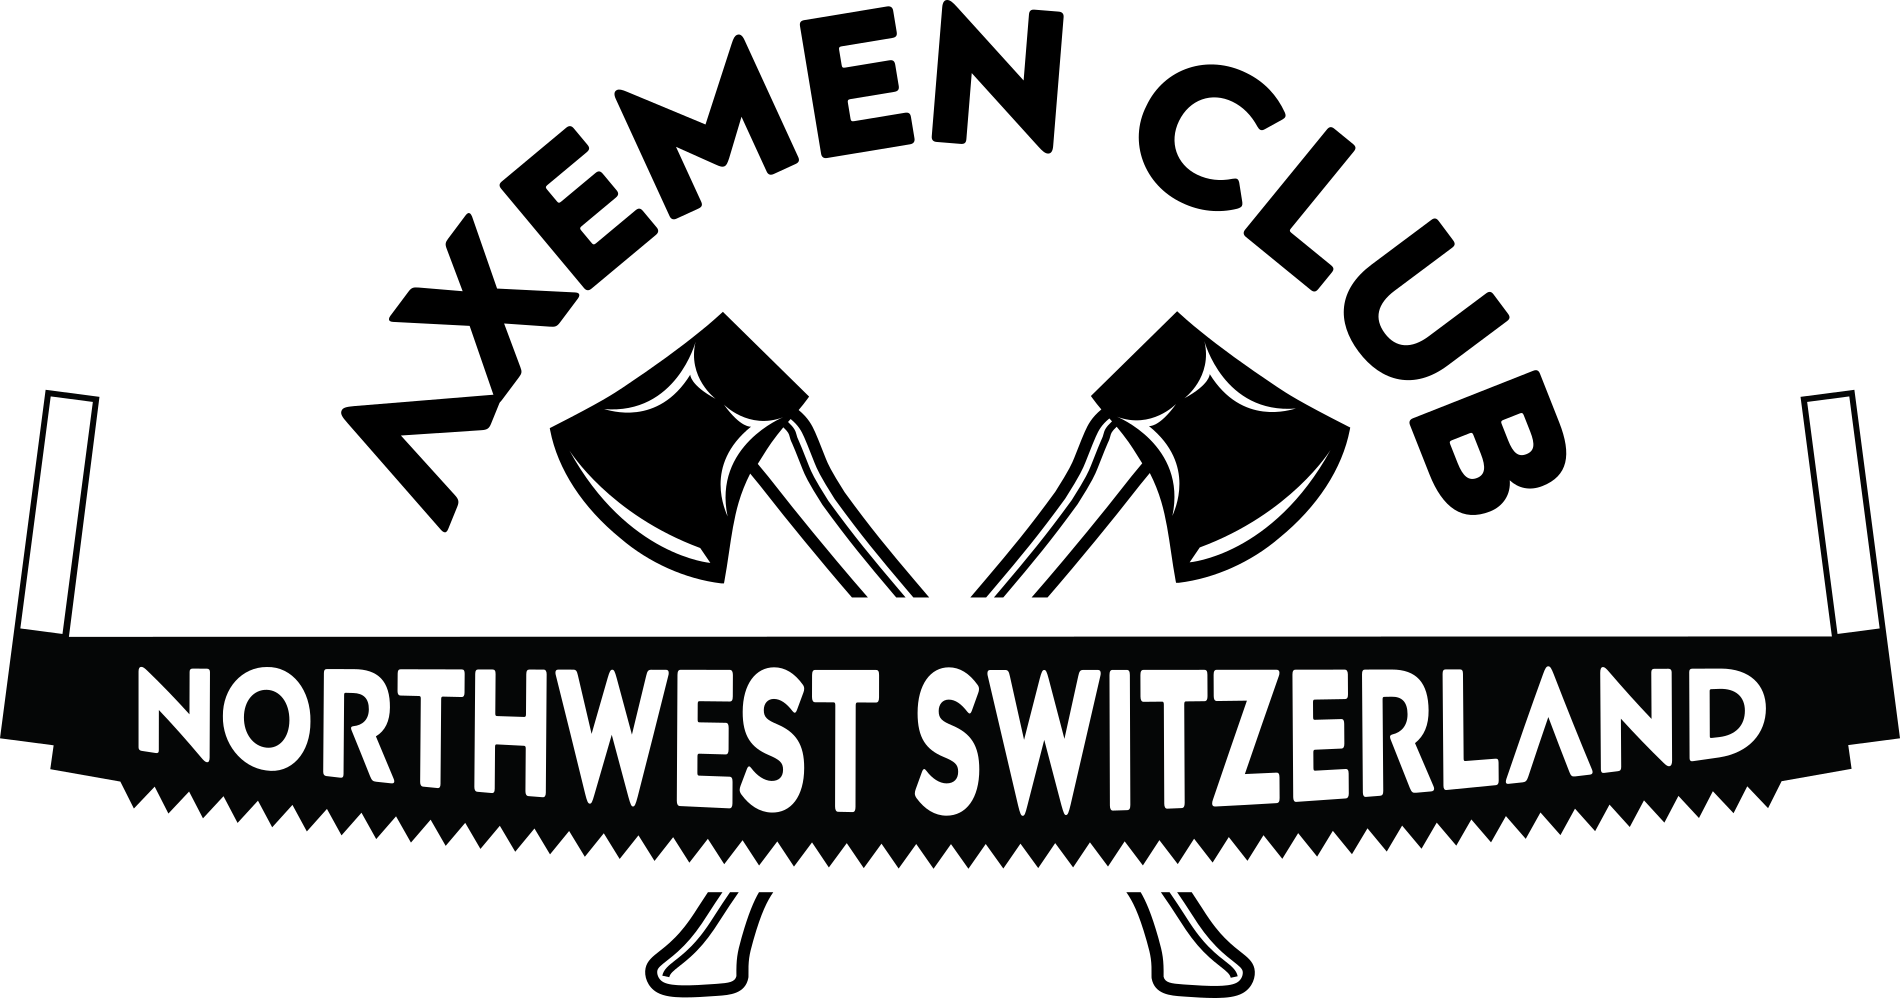 Logo Axemen Club Northwest Switzerland